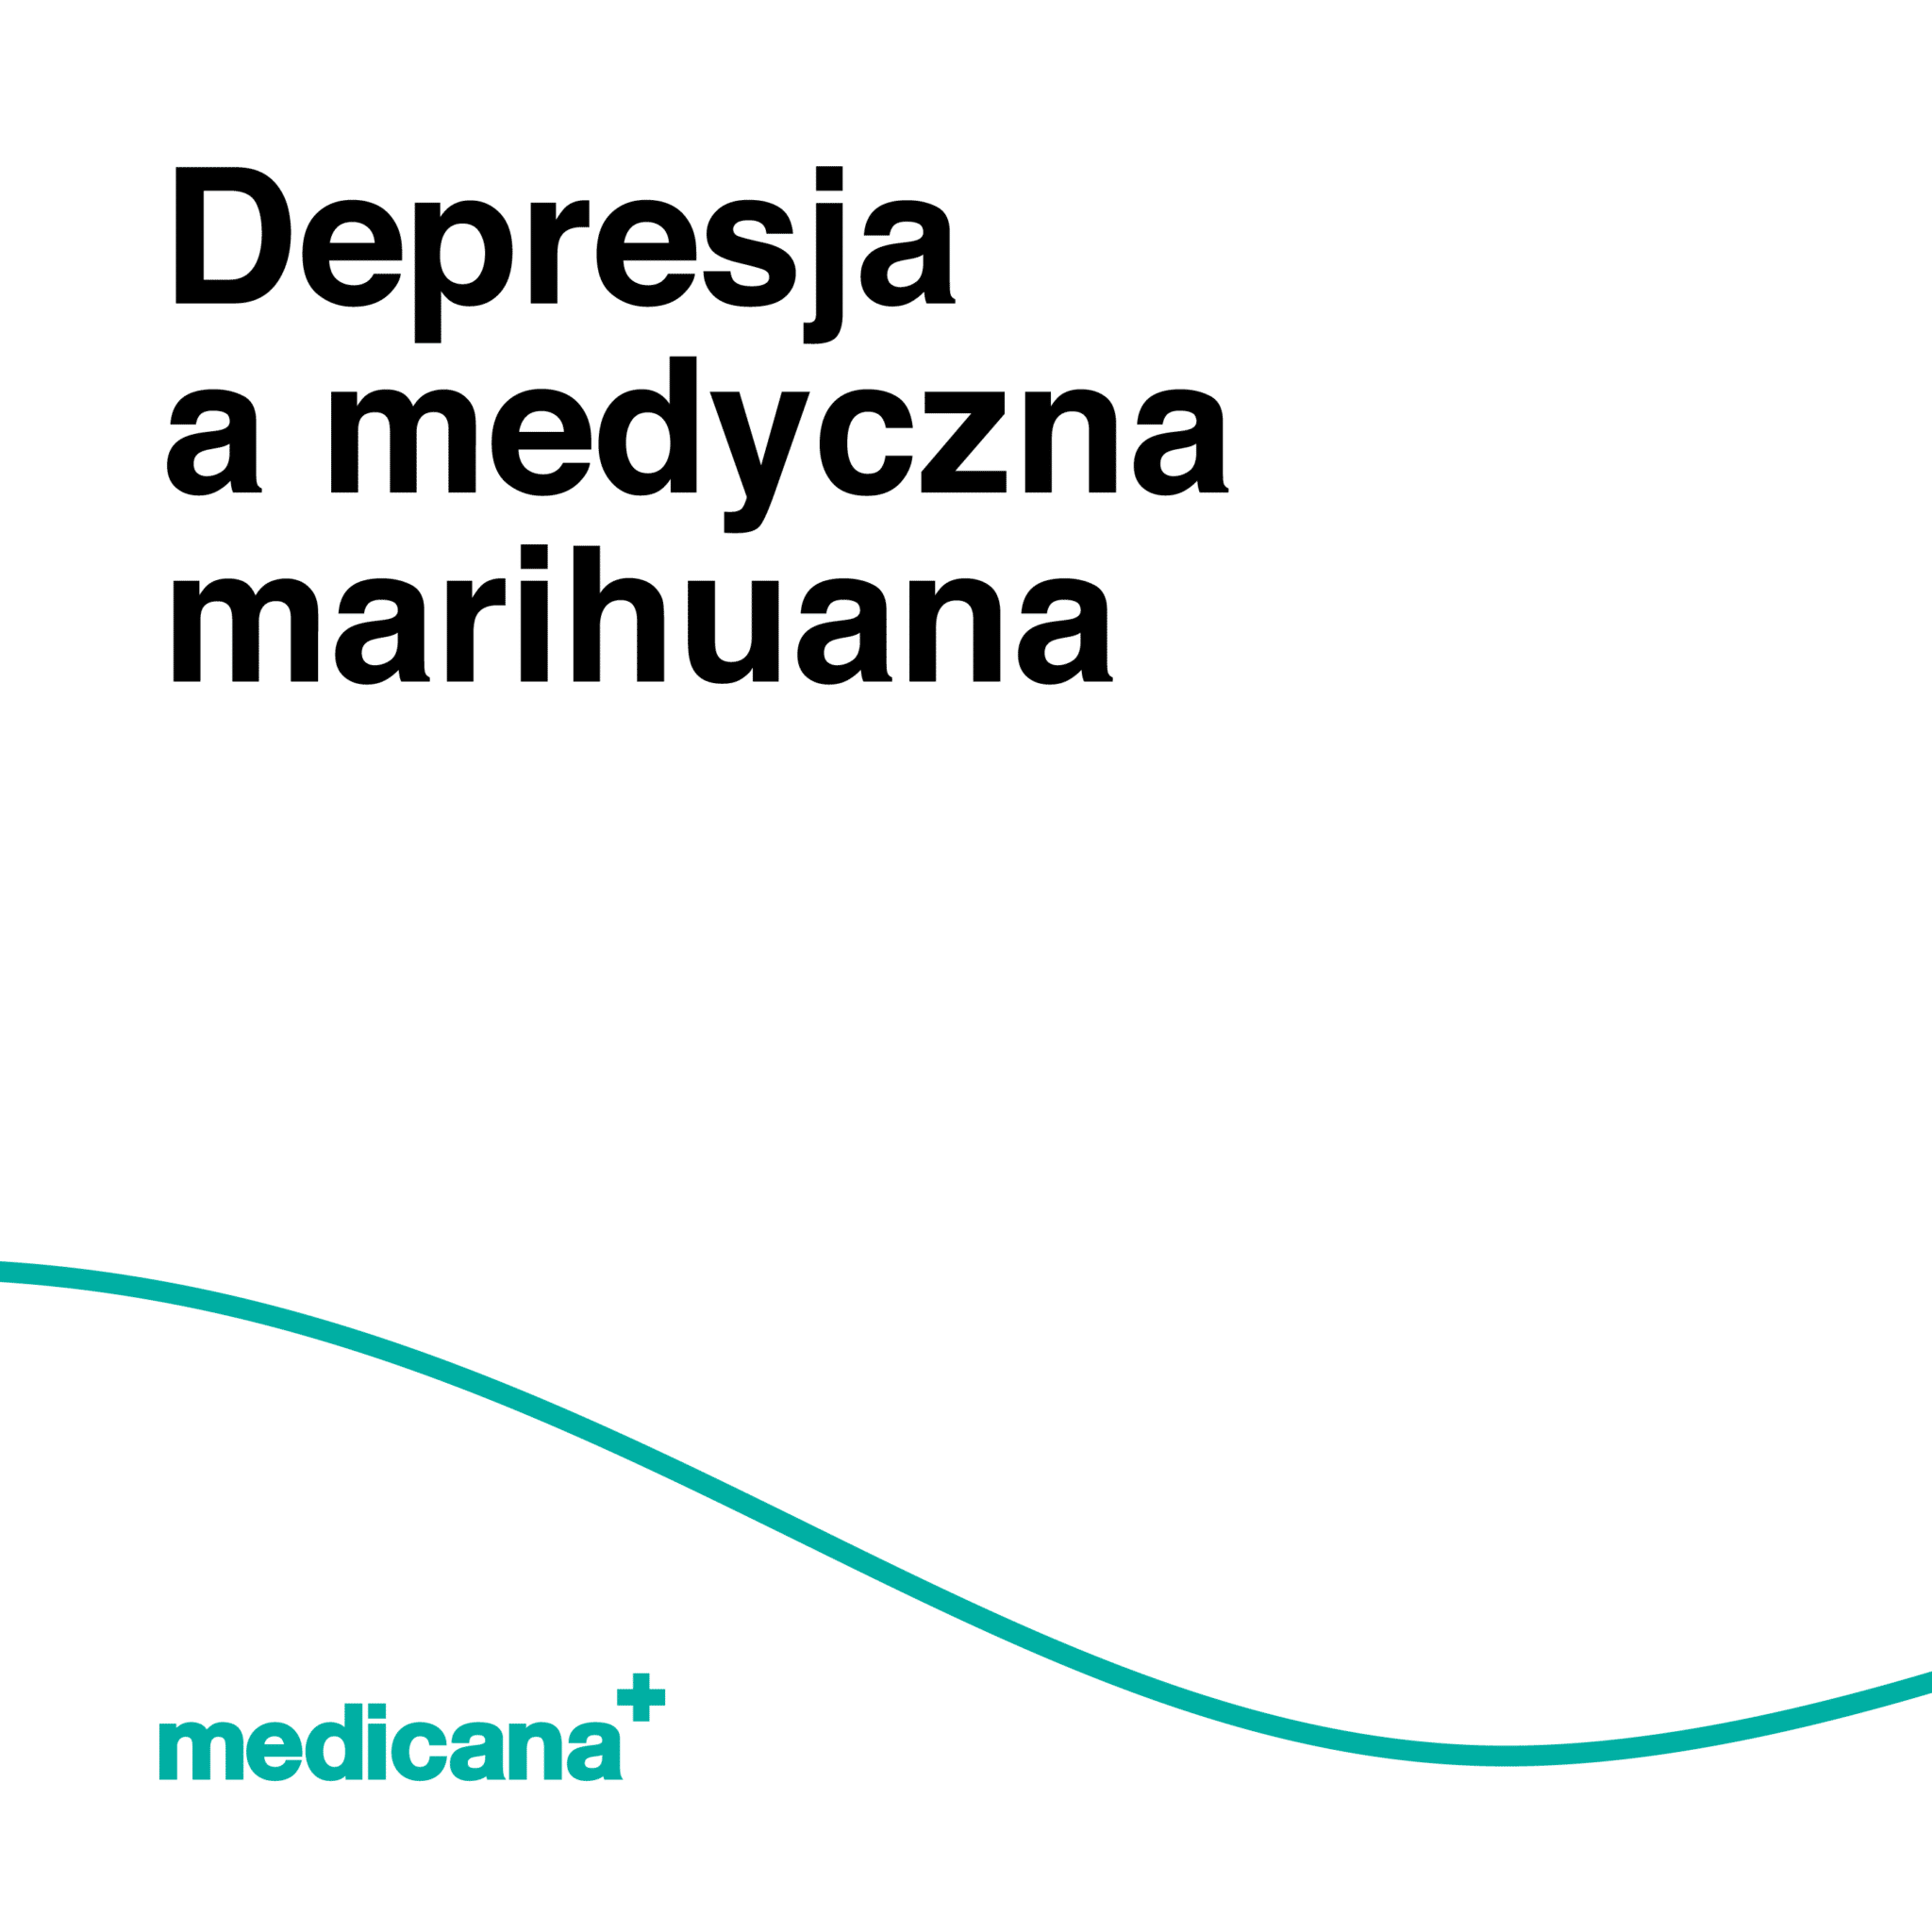 Grafika, białe tło z zieloną linią, czarnym napisem Depresja a medyczna marihuana i logo Medicana Centrum Terapii Medyczna Marihuana w lewym dolnym rogu.